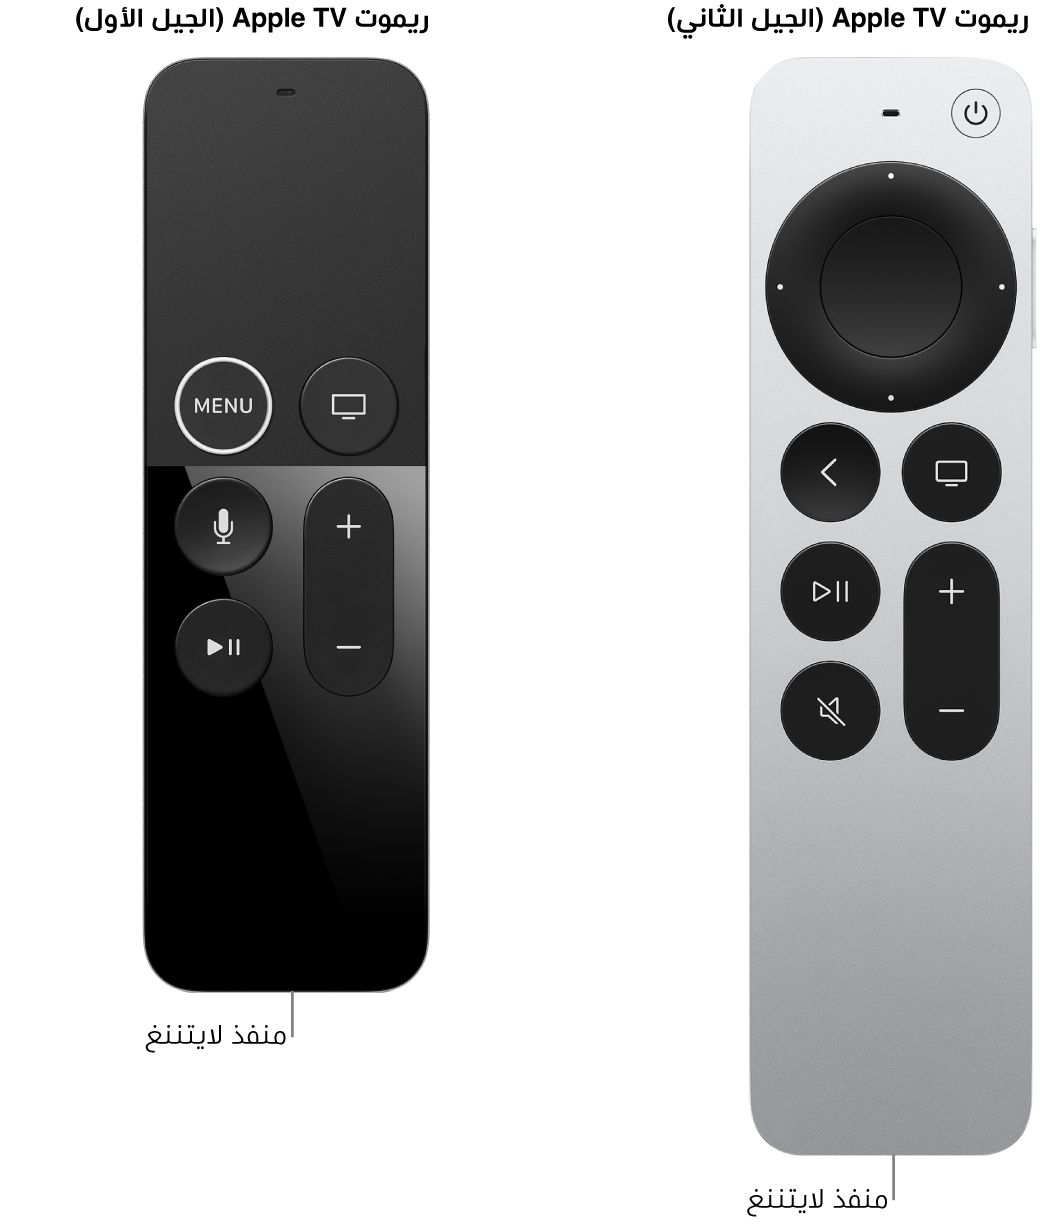 صورة Apple TV Remote (الجيل الثاني) و Apple TV Remote (الجيل الأول) تعرض منفذ لايتننغ